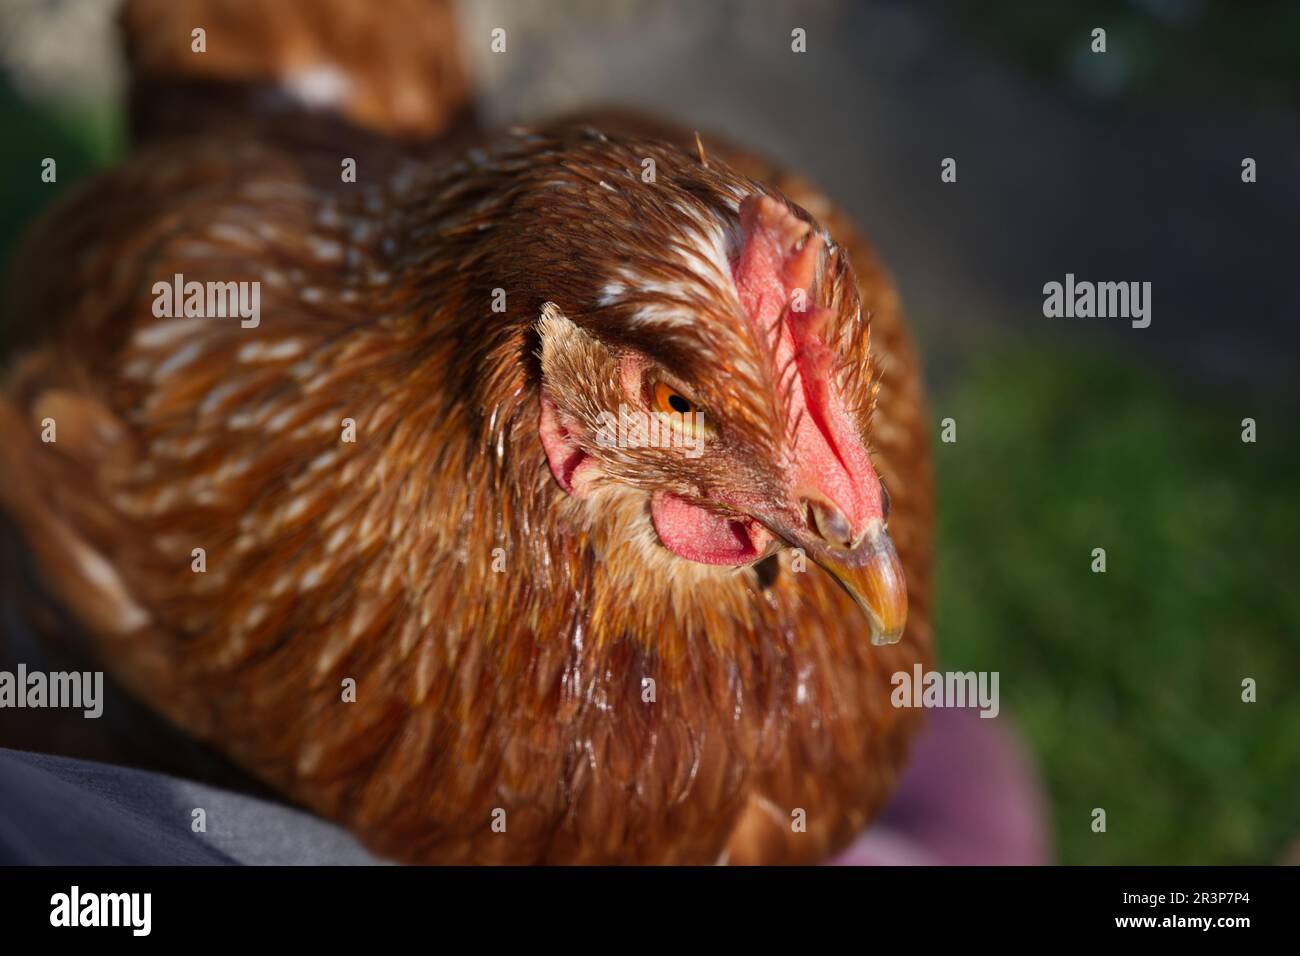 A pet chicken / hen enjoys the sun Stock Photo